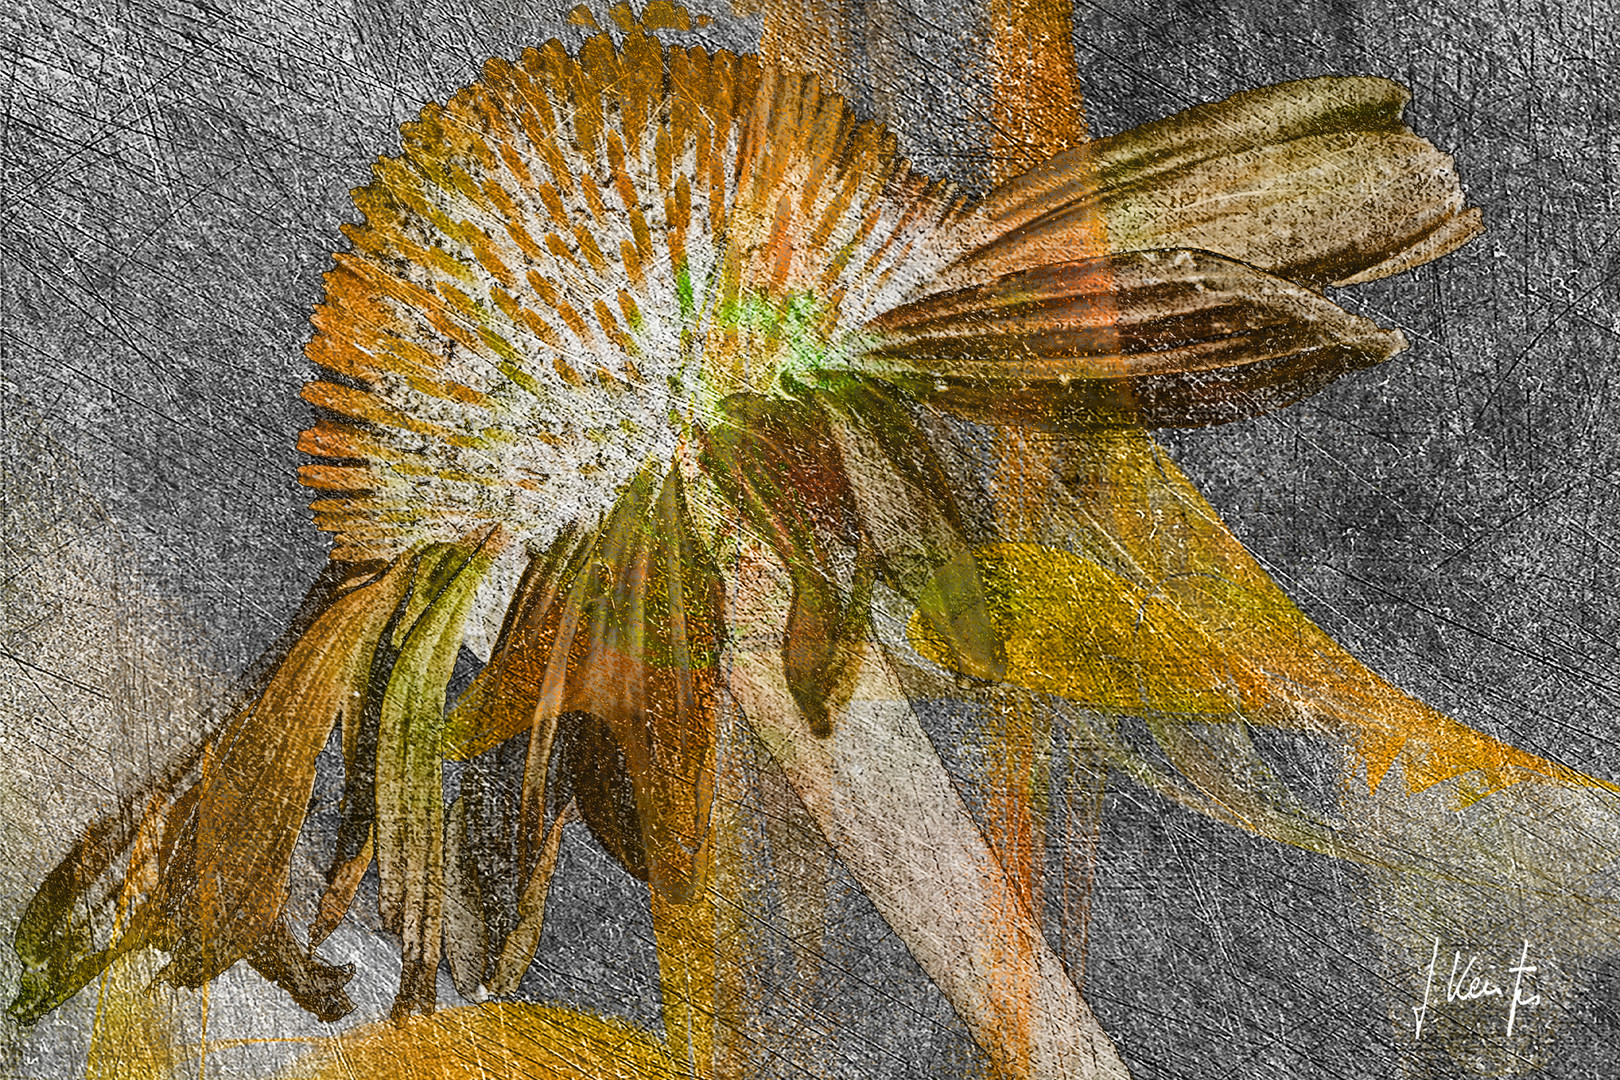 "Echinacea"